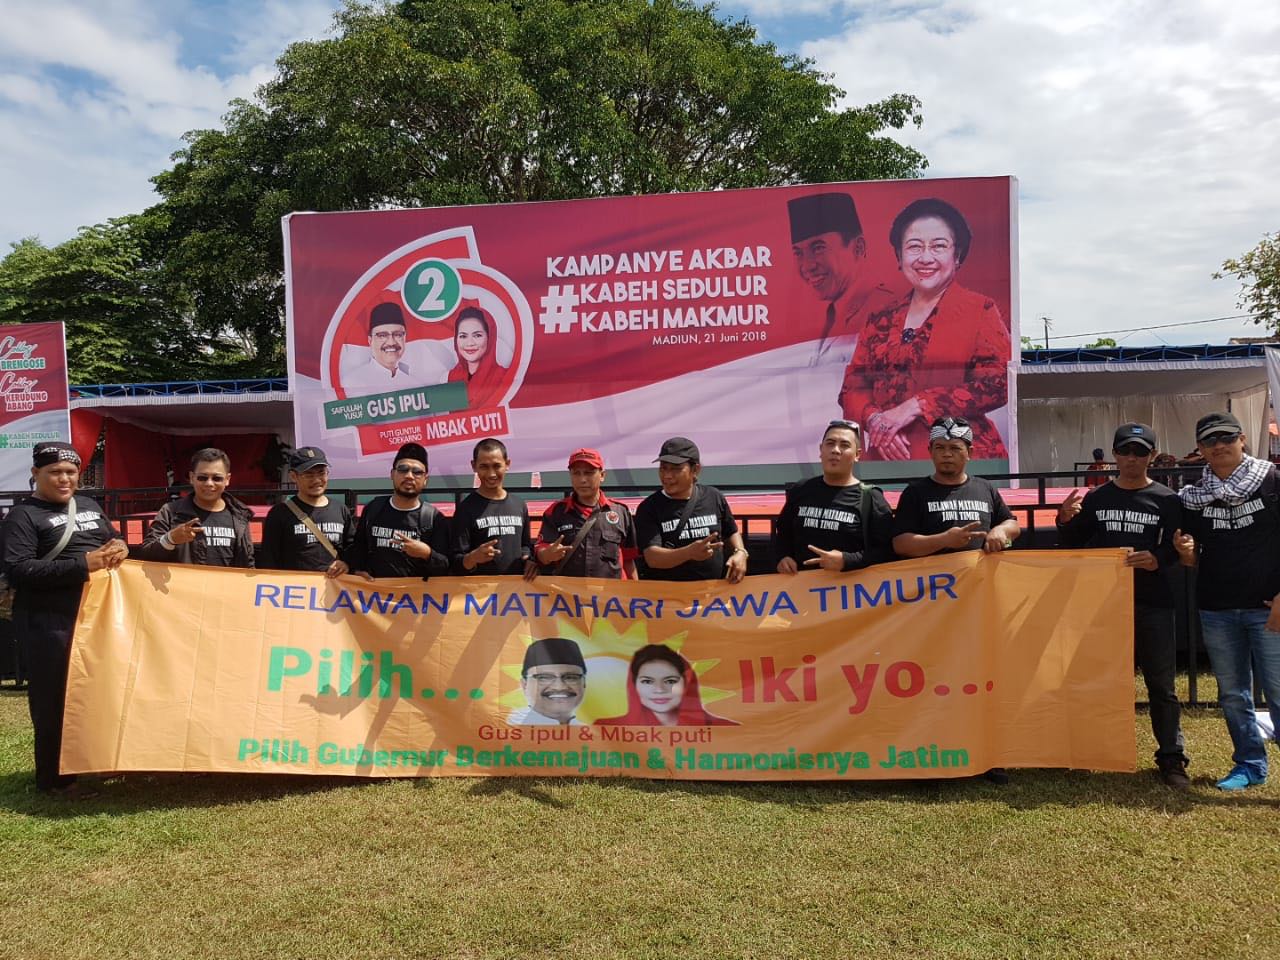 Relawan Matahari berisikan anak-anak muda yang religius dan nasionalis. Mereka berangkat dari Surabaya, dan siang ini sampai di Kota Madiun, Kamis, 21 Juni 2018.